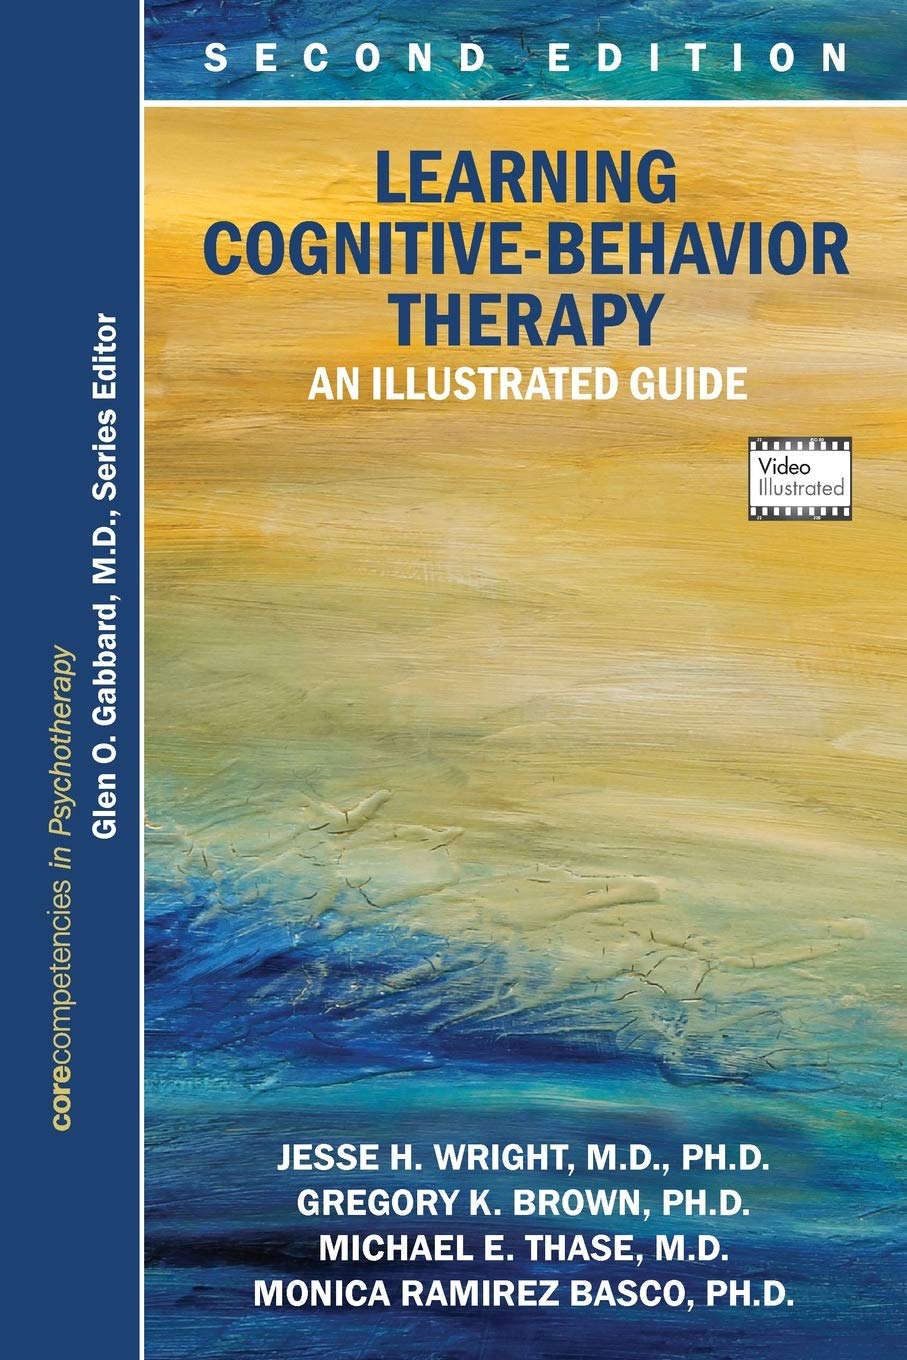 LIbri UK/US Wright, Jesse H. - Learning Cognitive-Behavior Therapy : An Illustrated Guide NUOVO SIGILLATO, EDIZIONE DEL 30/01/2017 SUBITO DISPONIBILE